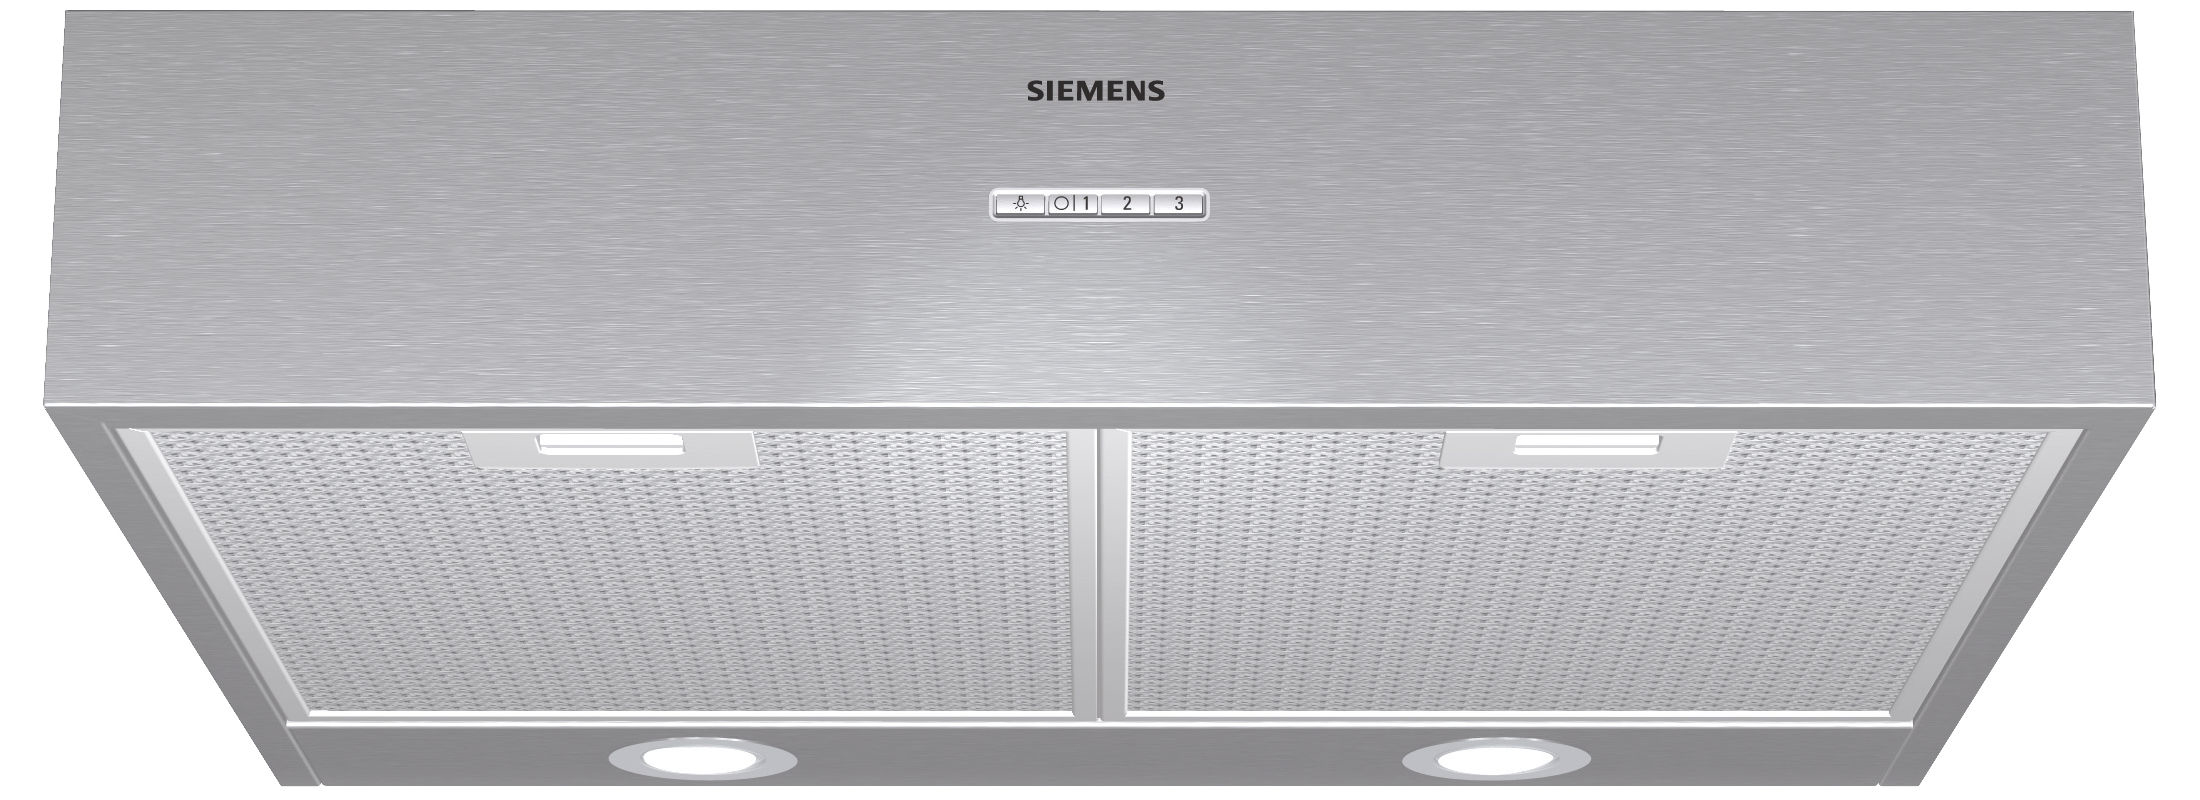 Image of Siemens LU29050